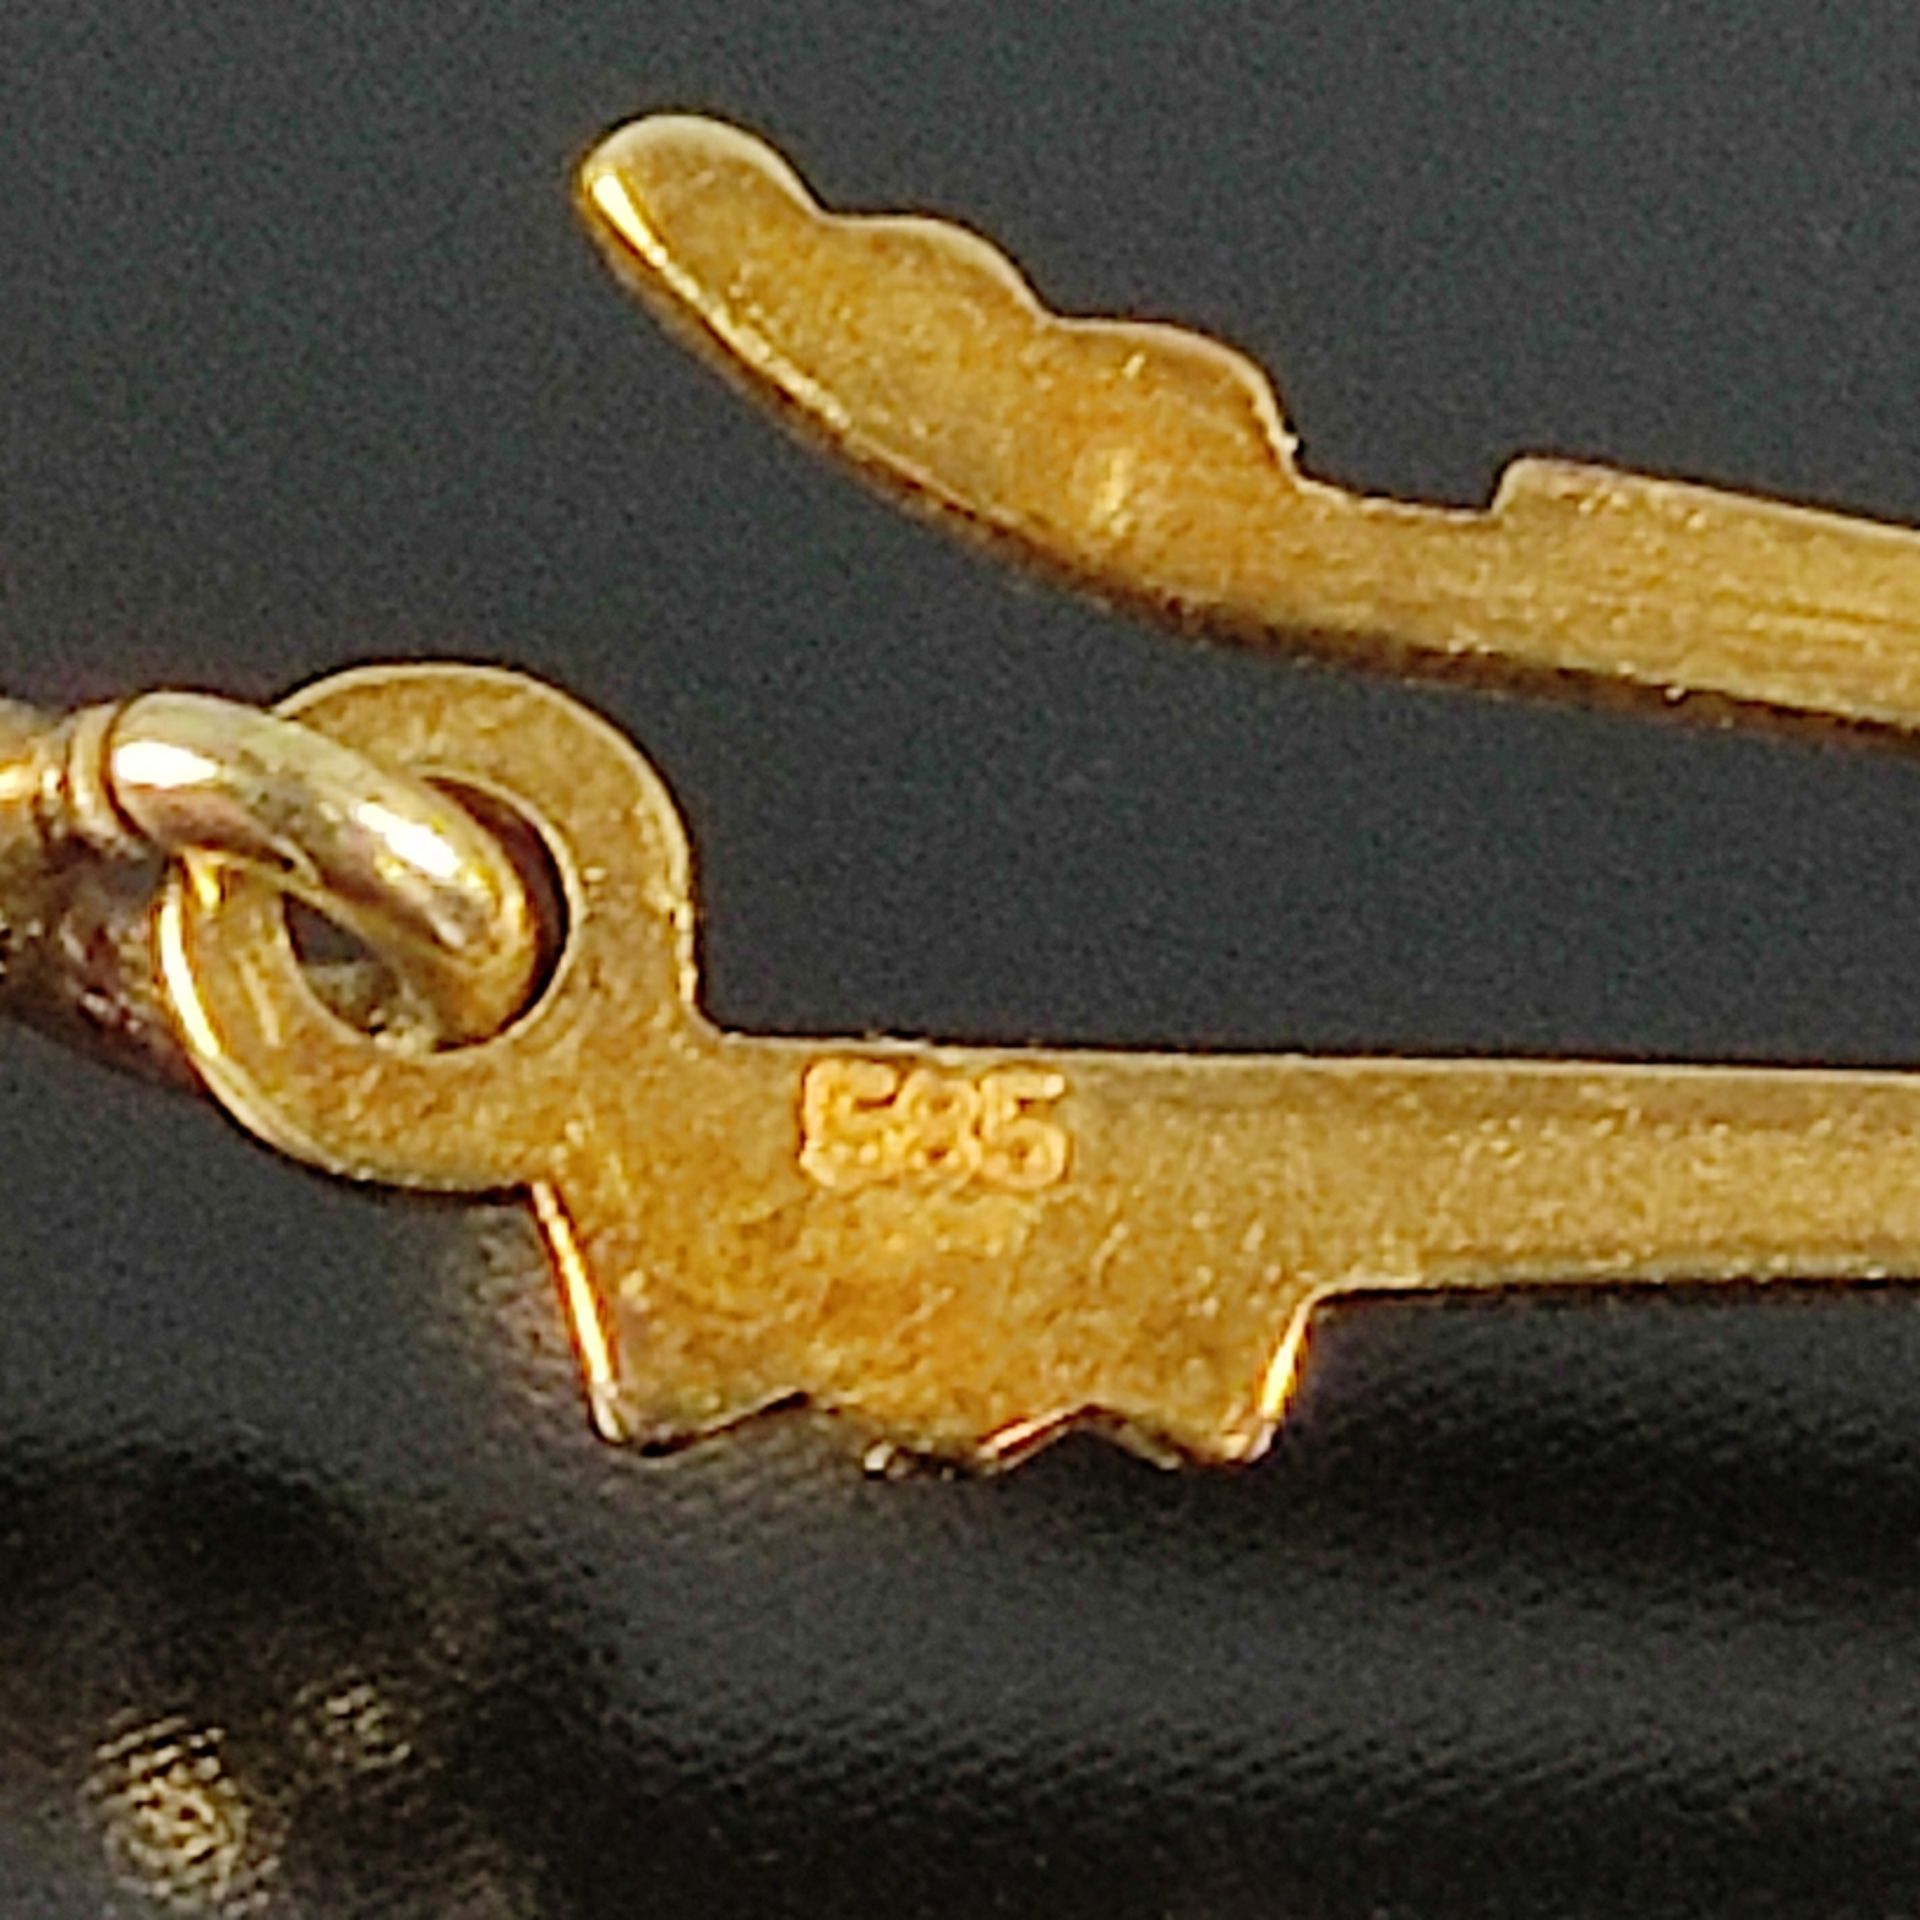 Feine Perlenkette, 585/14K Gelbgold, Gesamtgewicht 26,7g, feine Akoya-Zuchtperlen in weißem Lüster, - Bild 3 aus 3